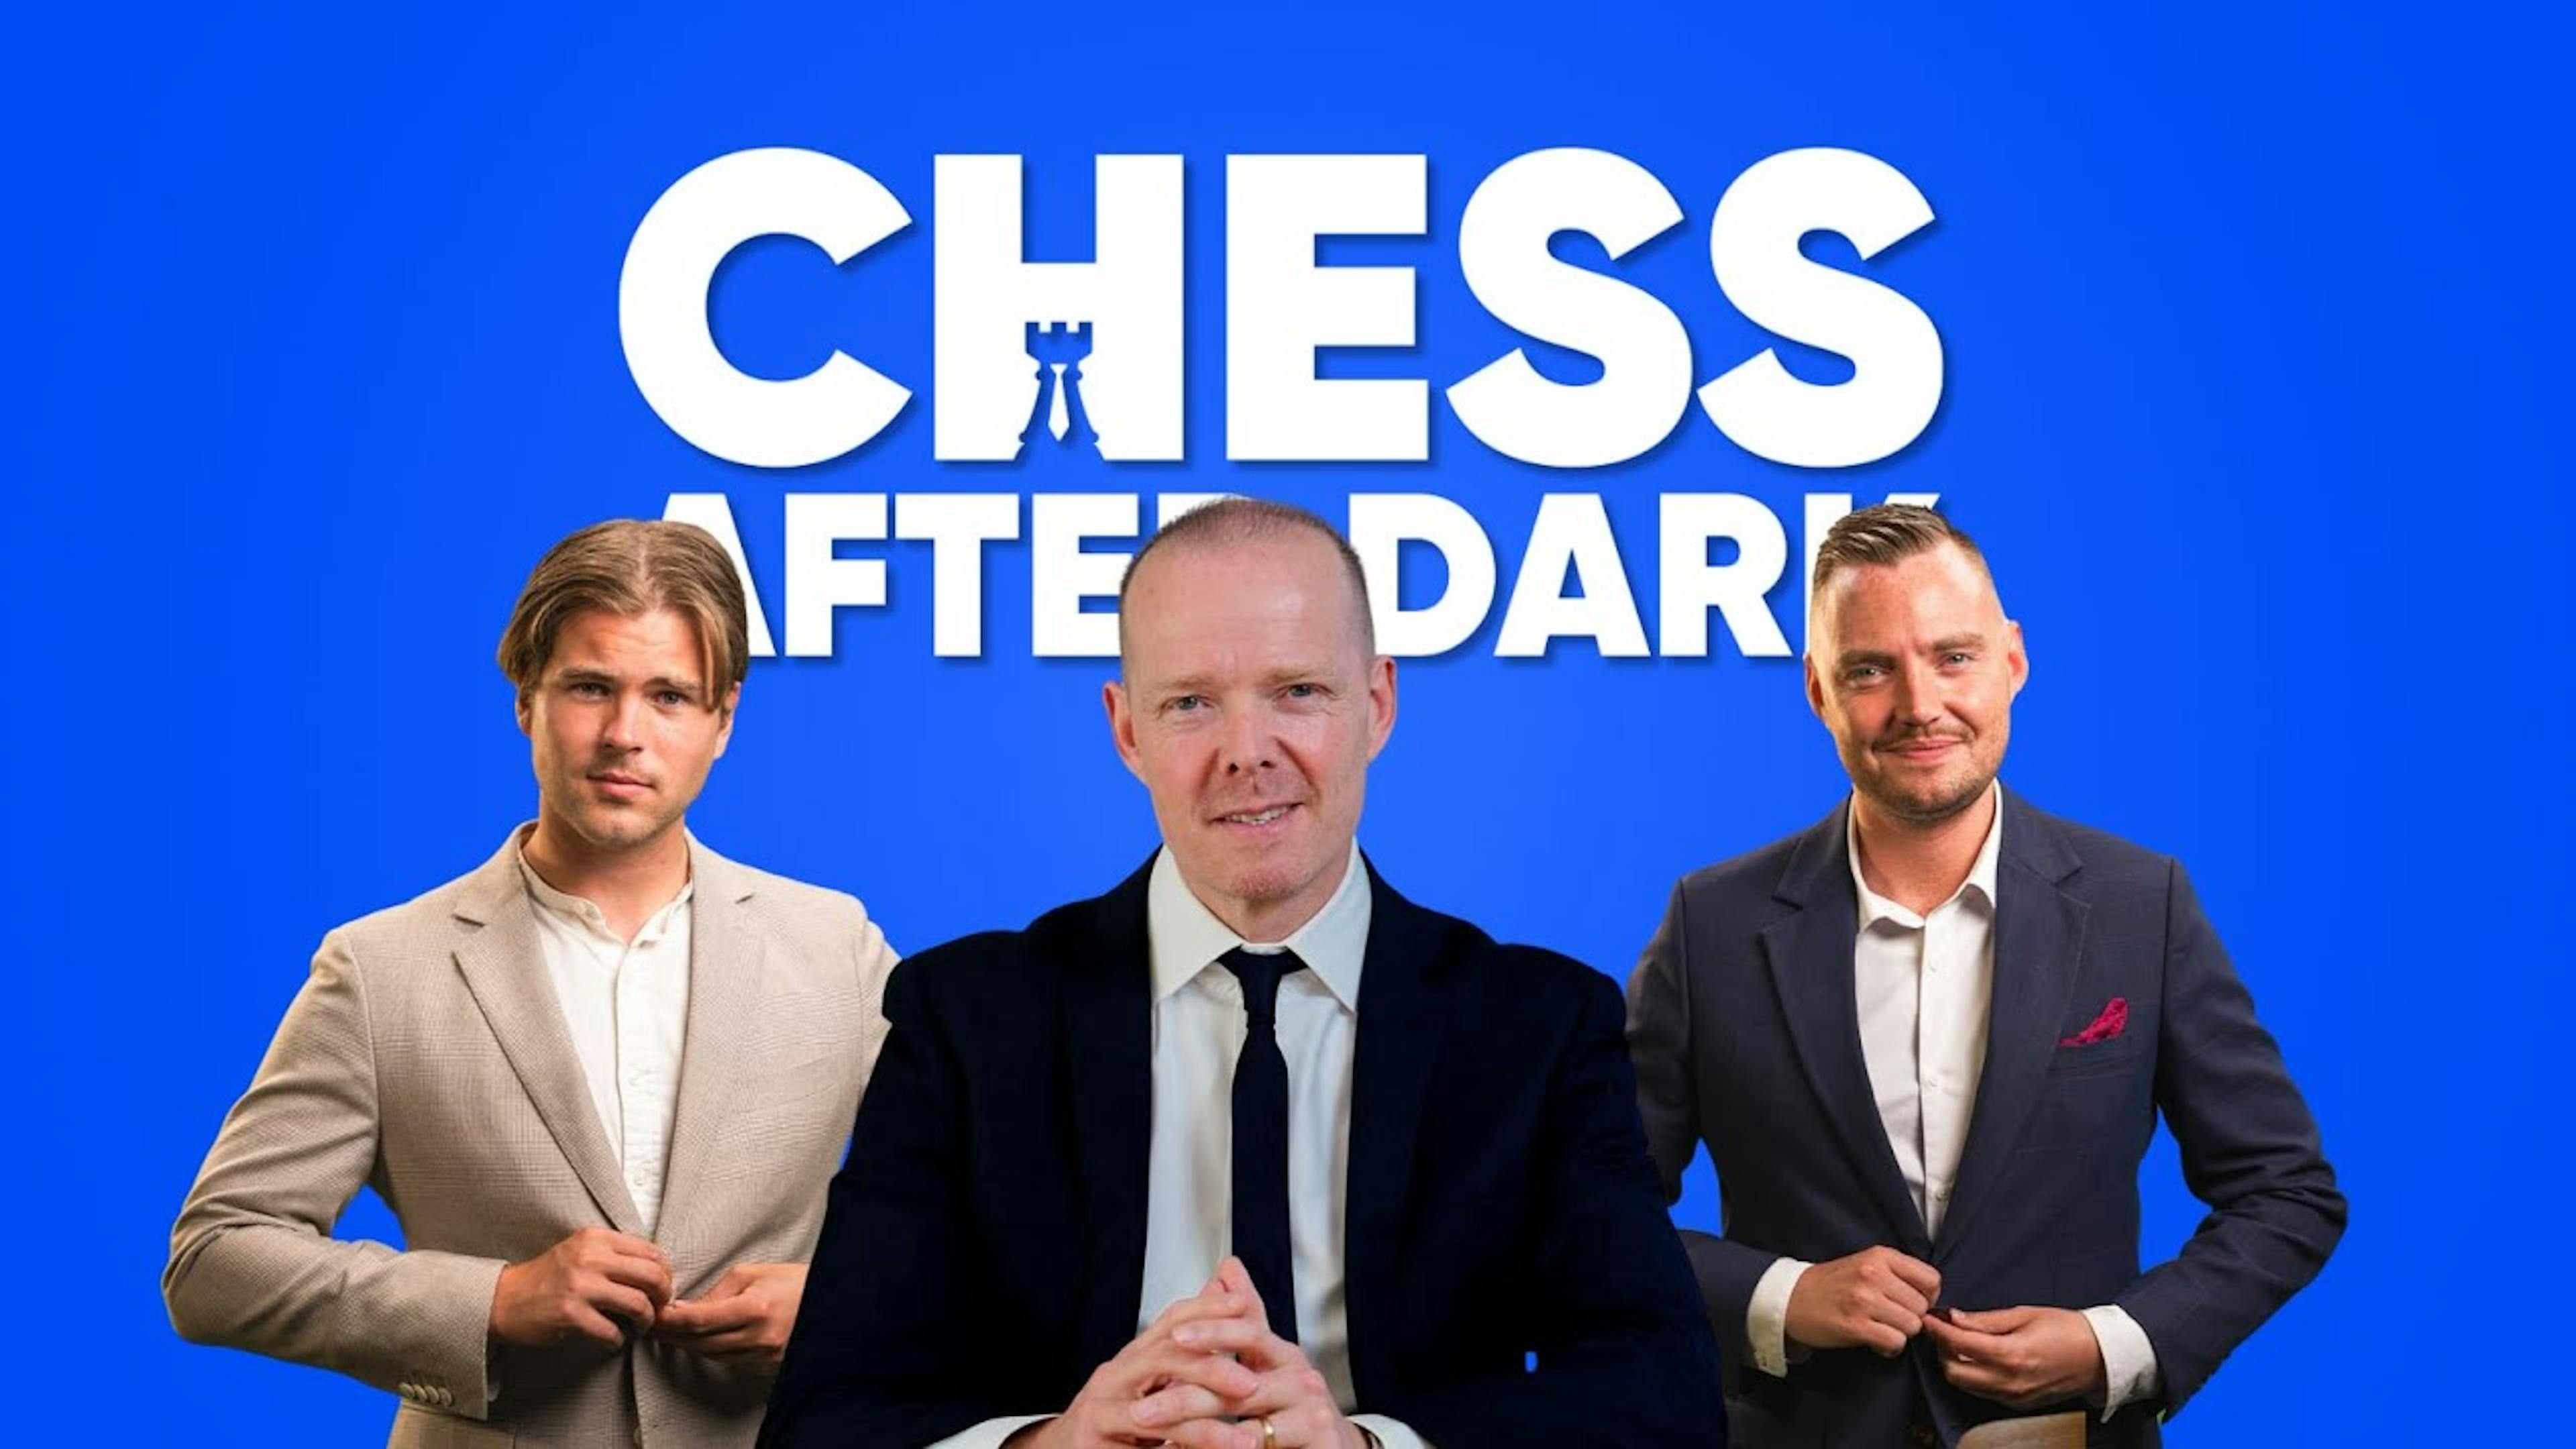 Arnar Þór Jónsson í hlaðvarpinu Chess after dark